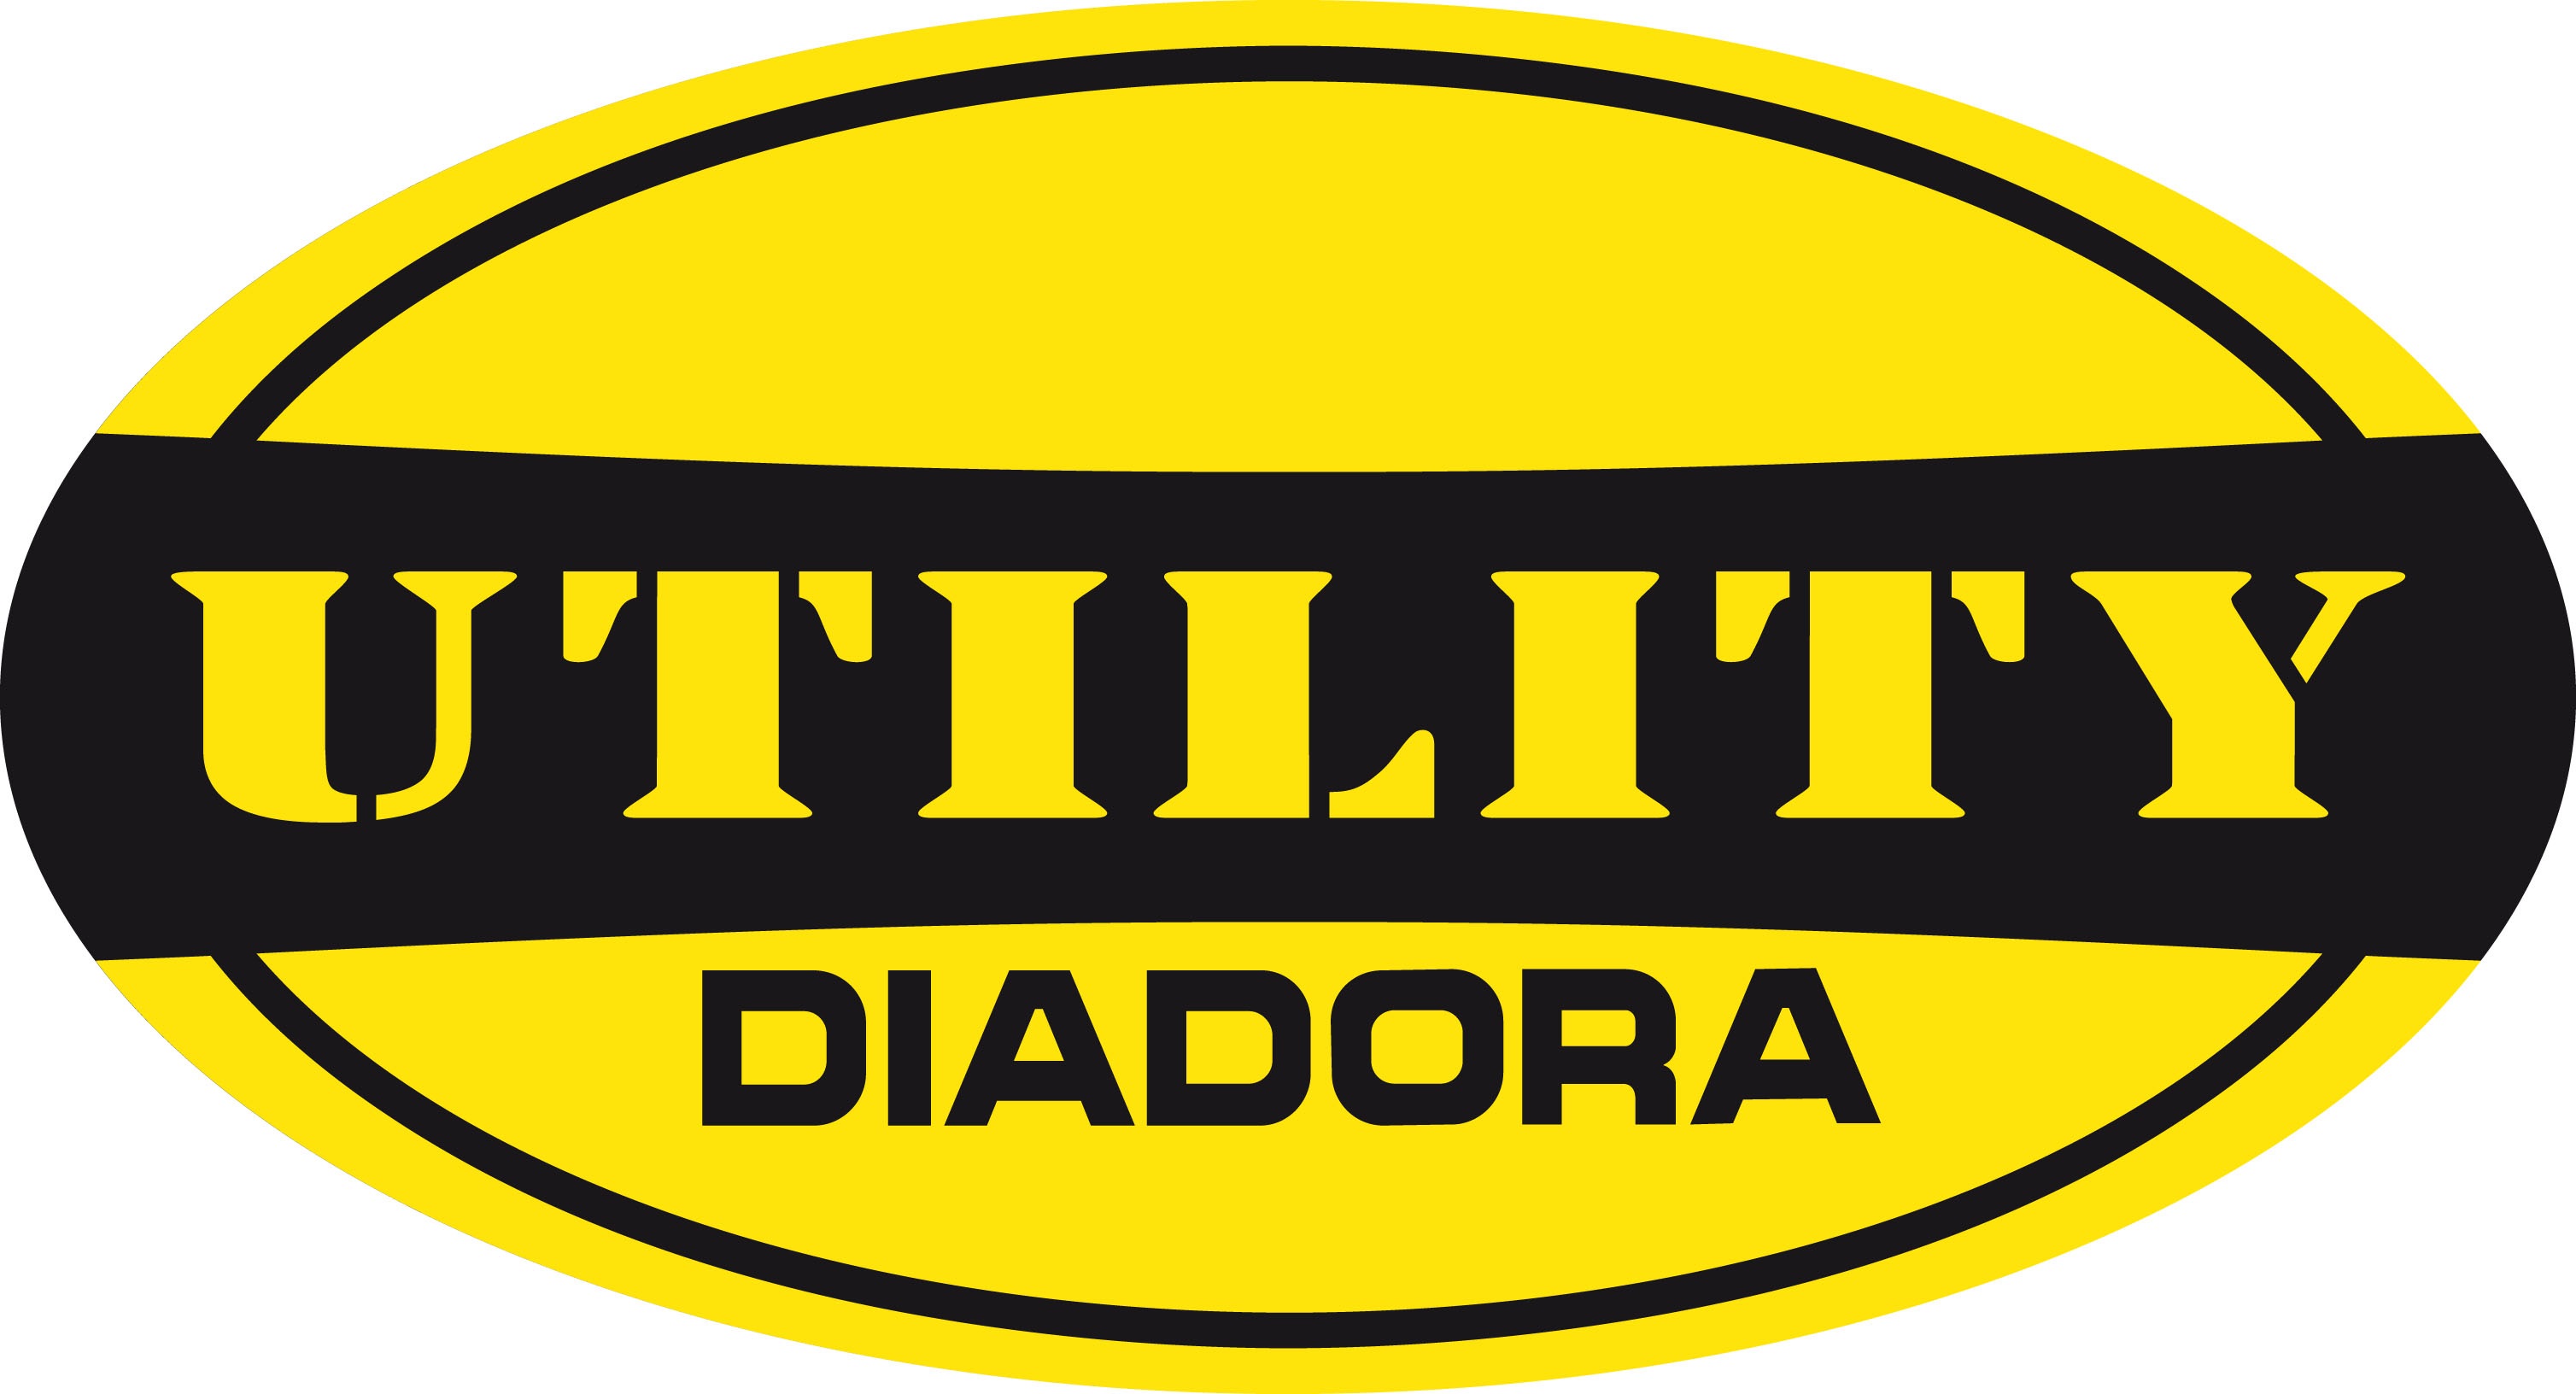 Diadora Utility